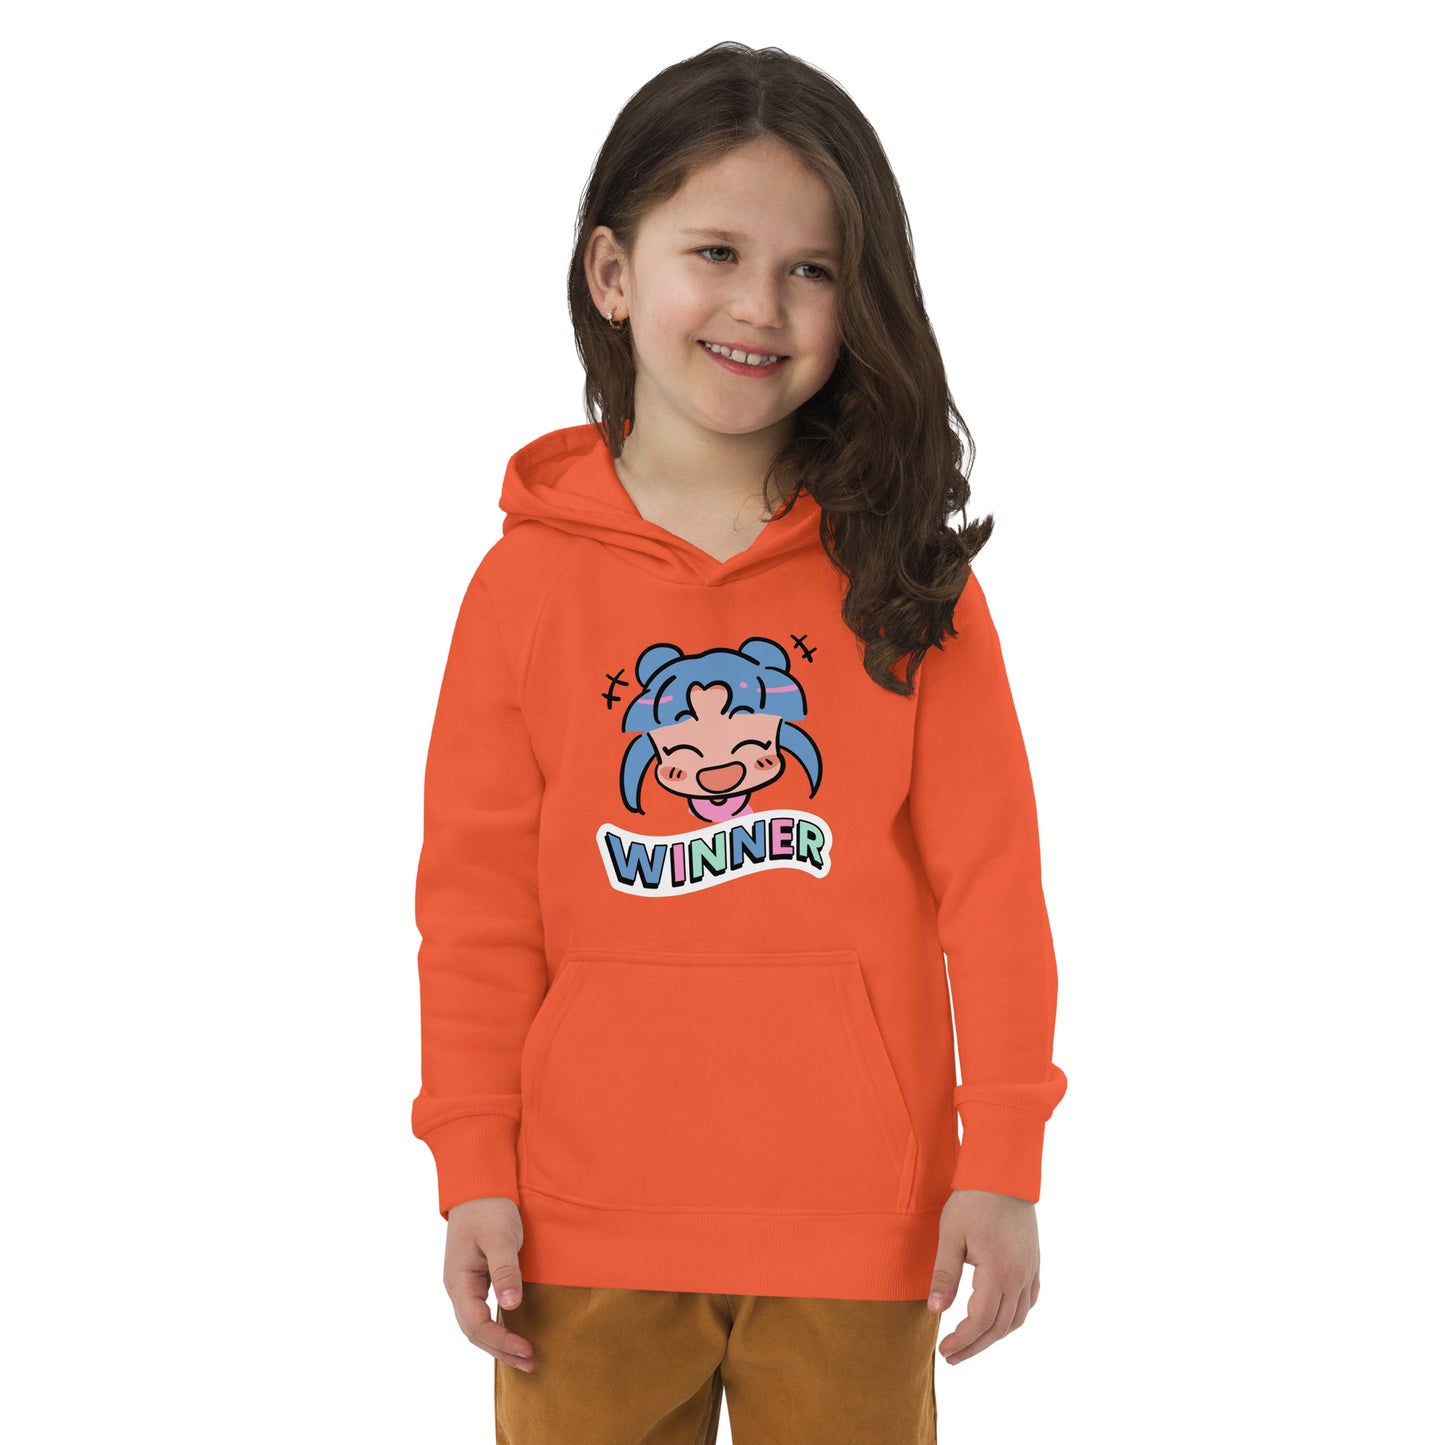 Winner - Kids eco hoodie - HobbyMeFree